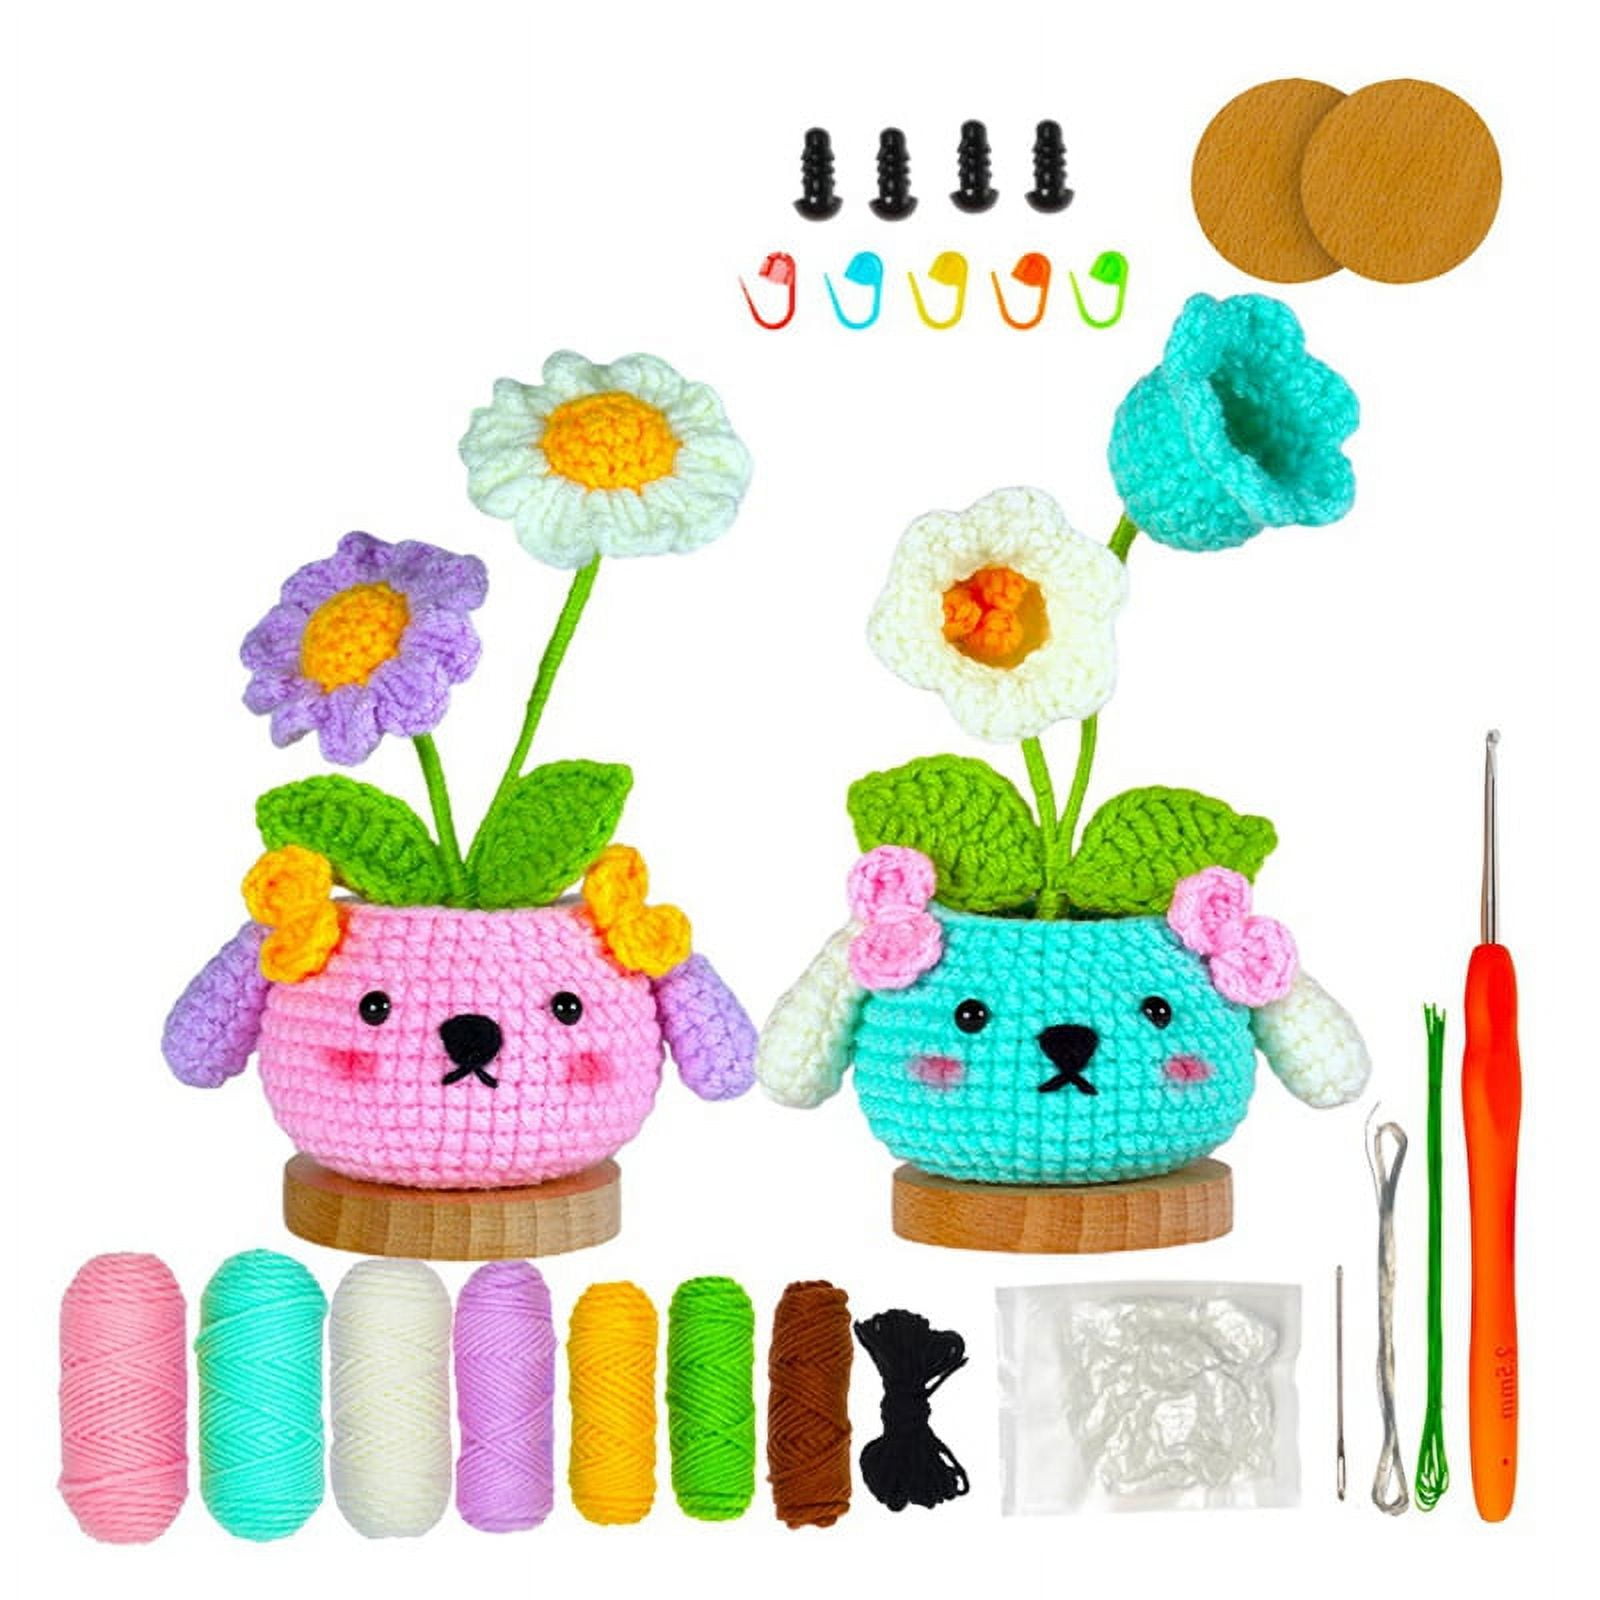 Crochetobe Crochet Kit for Beginners - Mushroom Crochet Kit with Detailed  Tutorials 